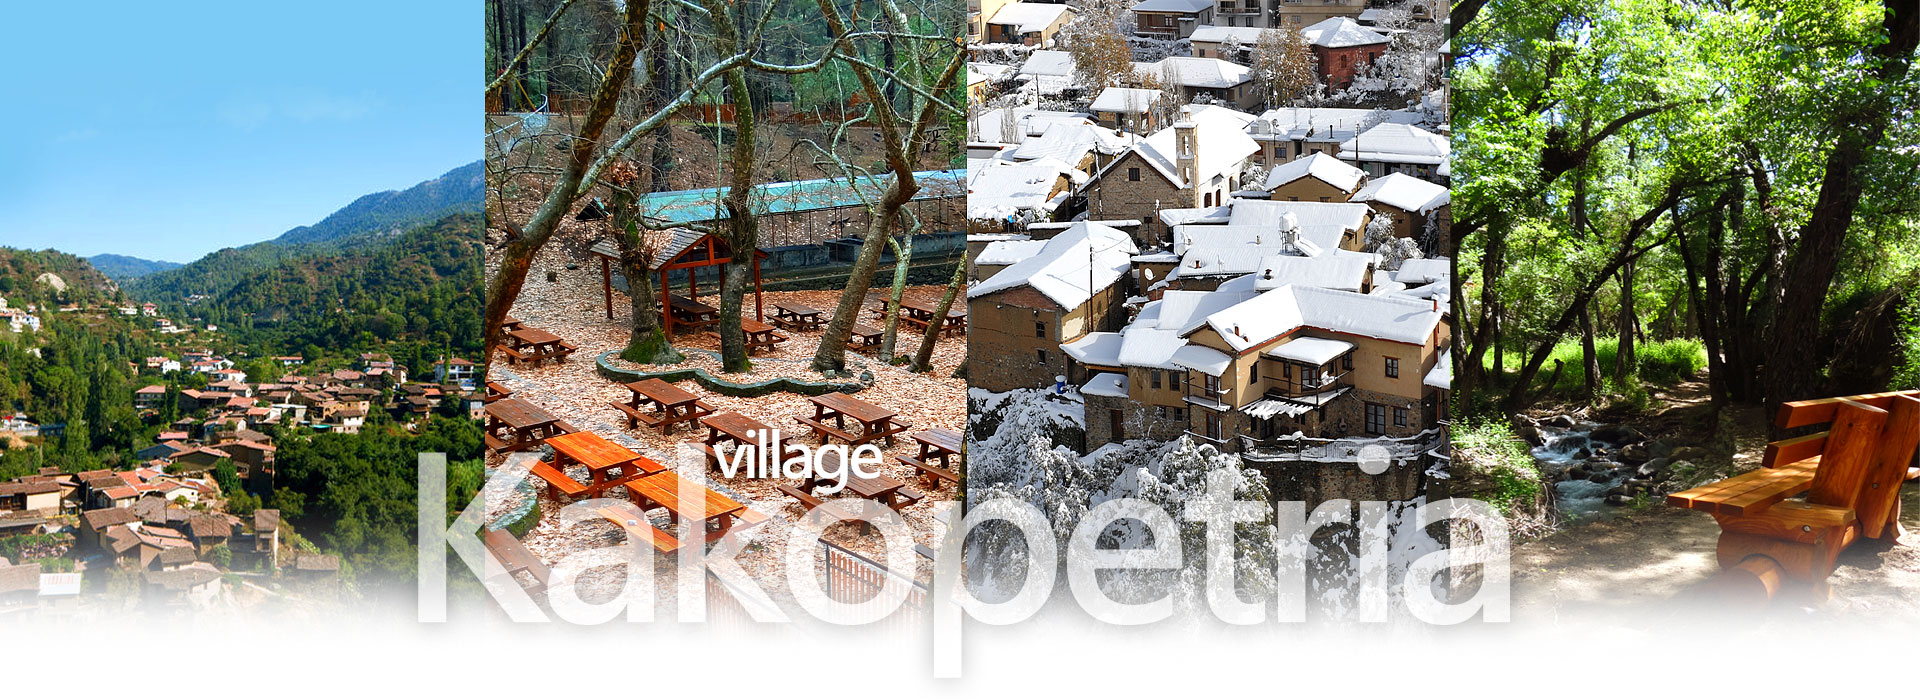 Kakopetria Village